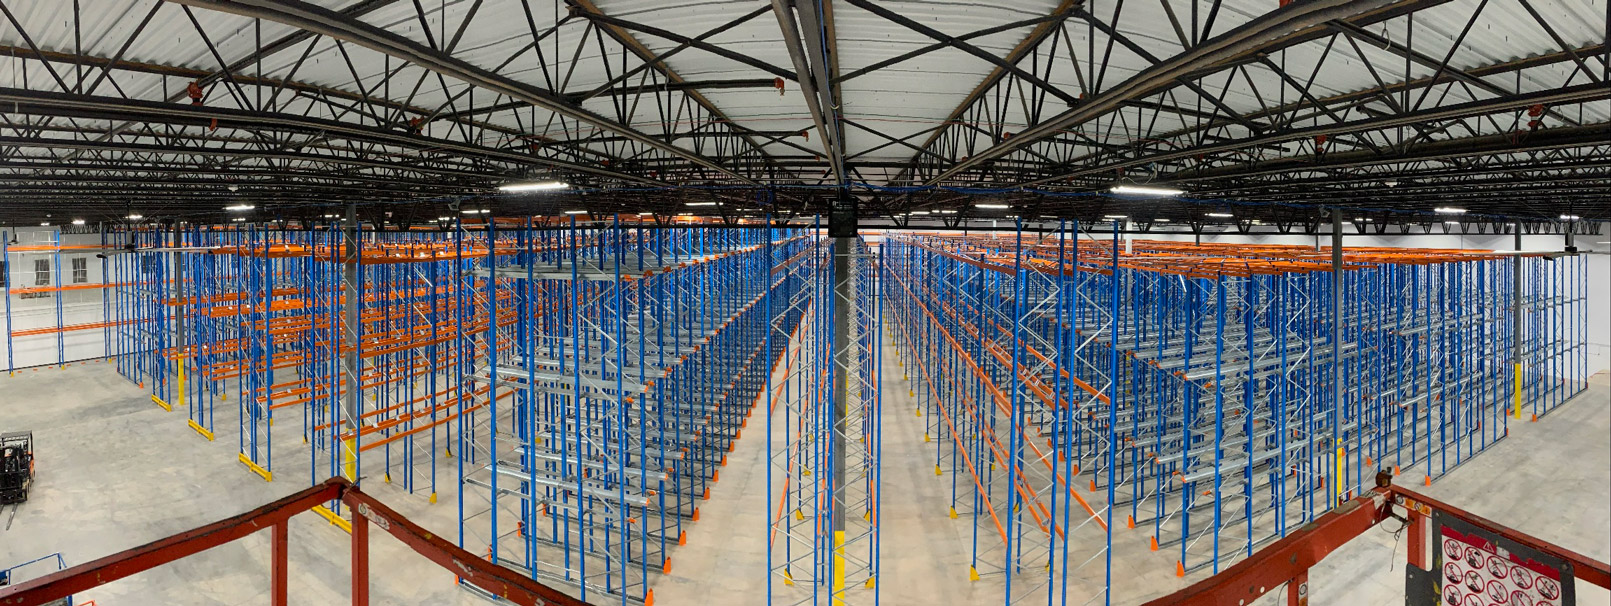 Pallet racking in warehouse panorama